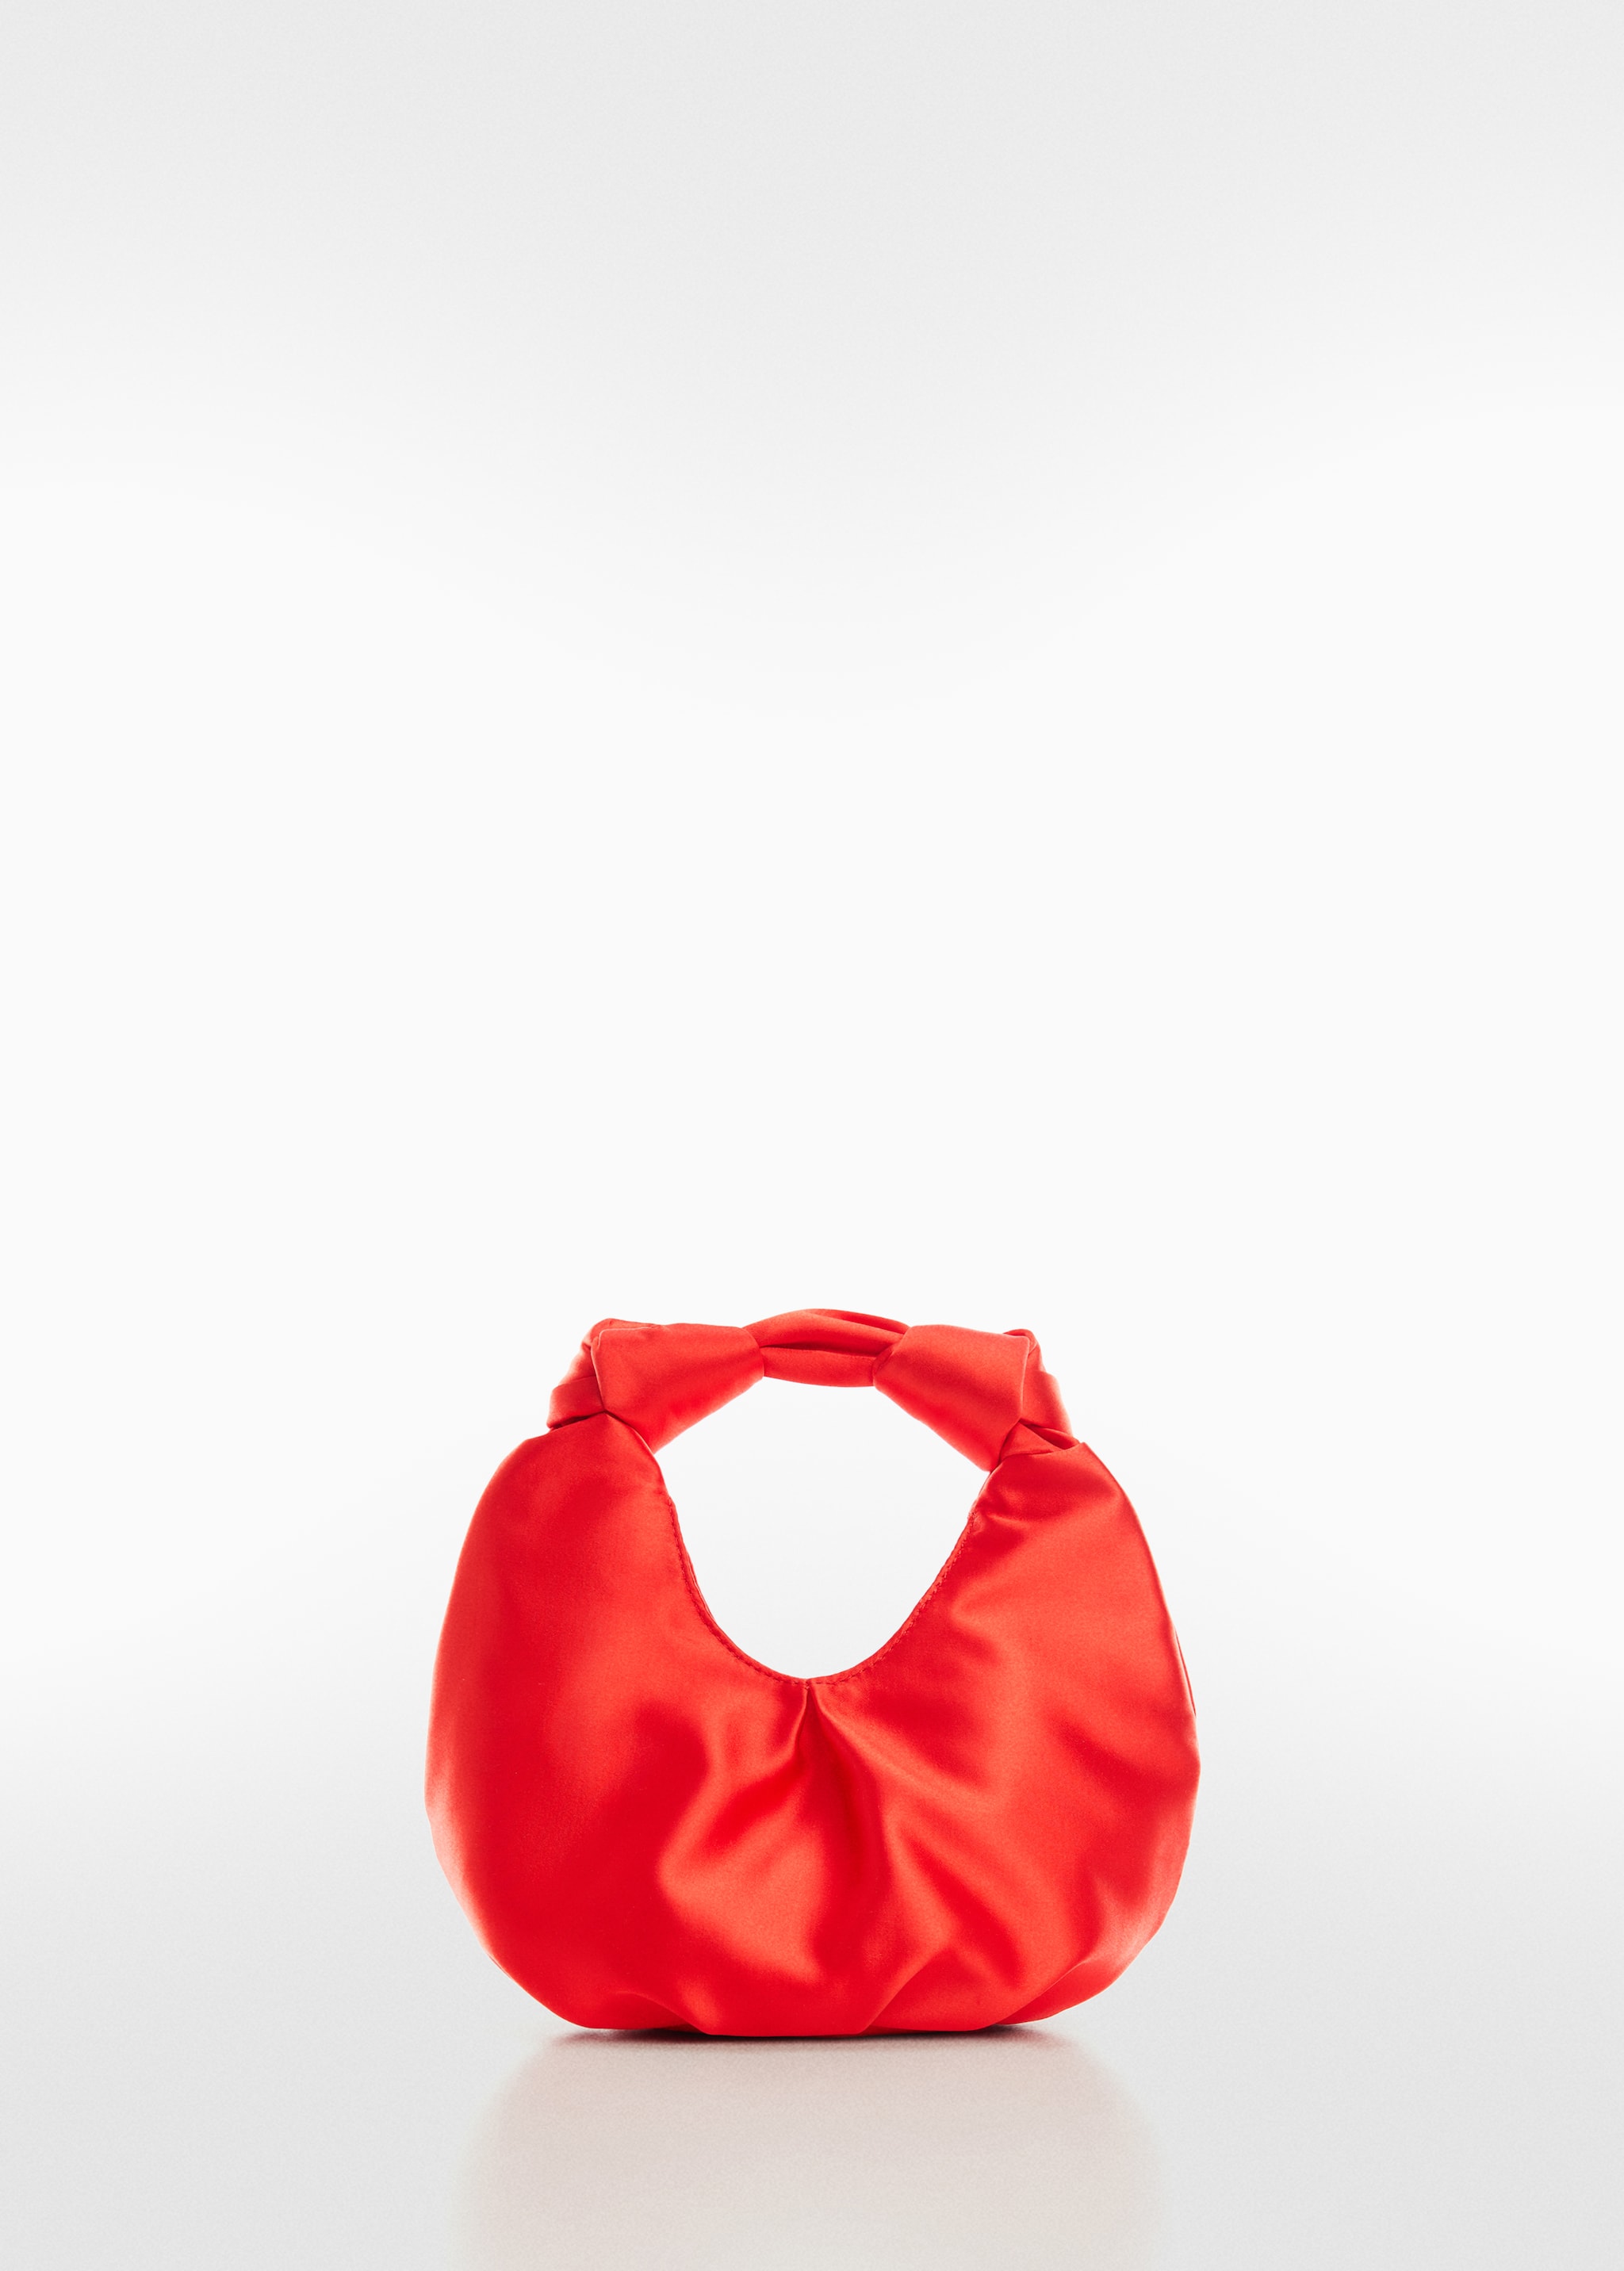 Атласная сумка для ношения в руке - Изделие без модели